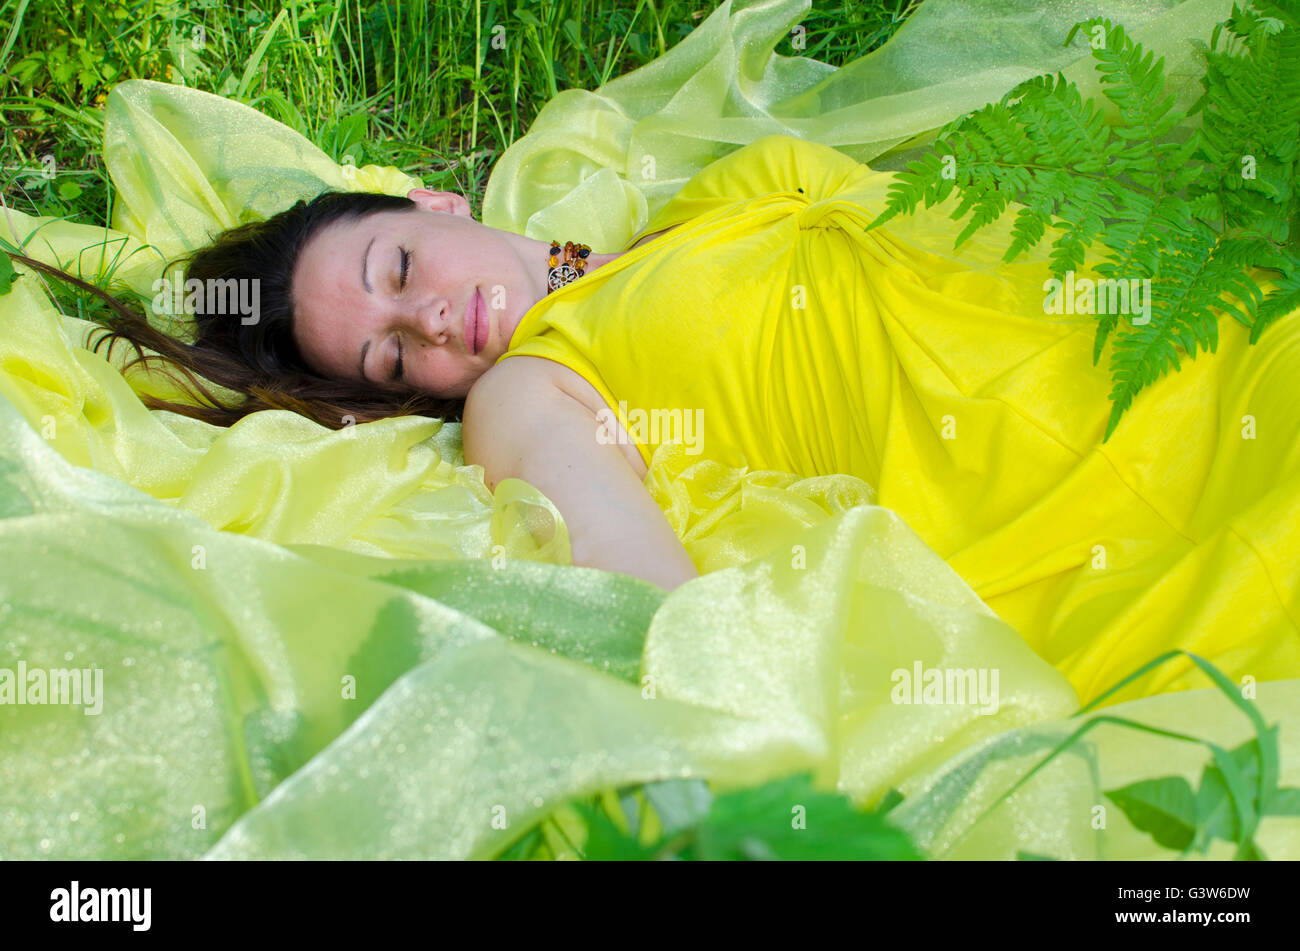 La jeune fille dort sur la matière jaune dans la nature, les jeunes, la jeune fille, capacité, sur jaune, matière, vert, une herbe, été, la natu Banque D'Images